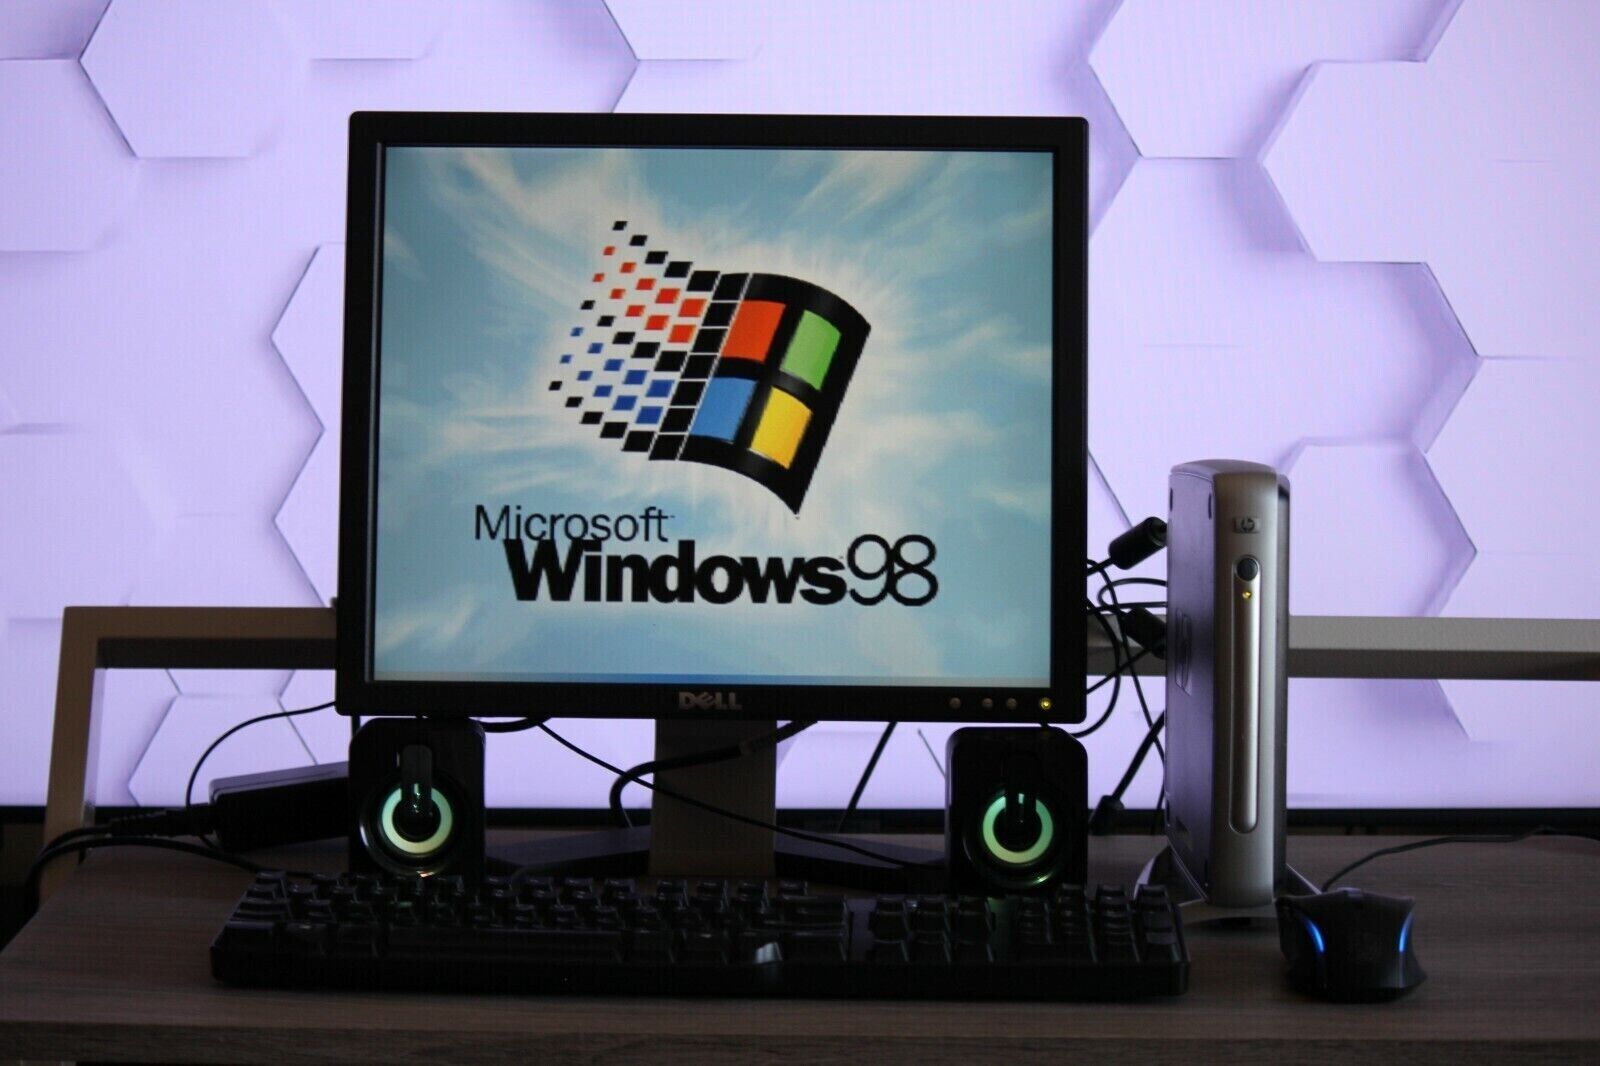 HP Windows 98 Retro Gaming PC 733Mhz CPU, 128MB RAM, 128GB SSD, USB CD/DVD Drive